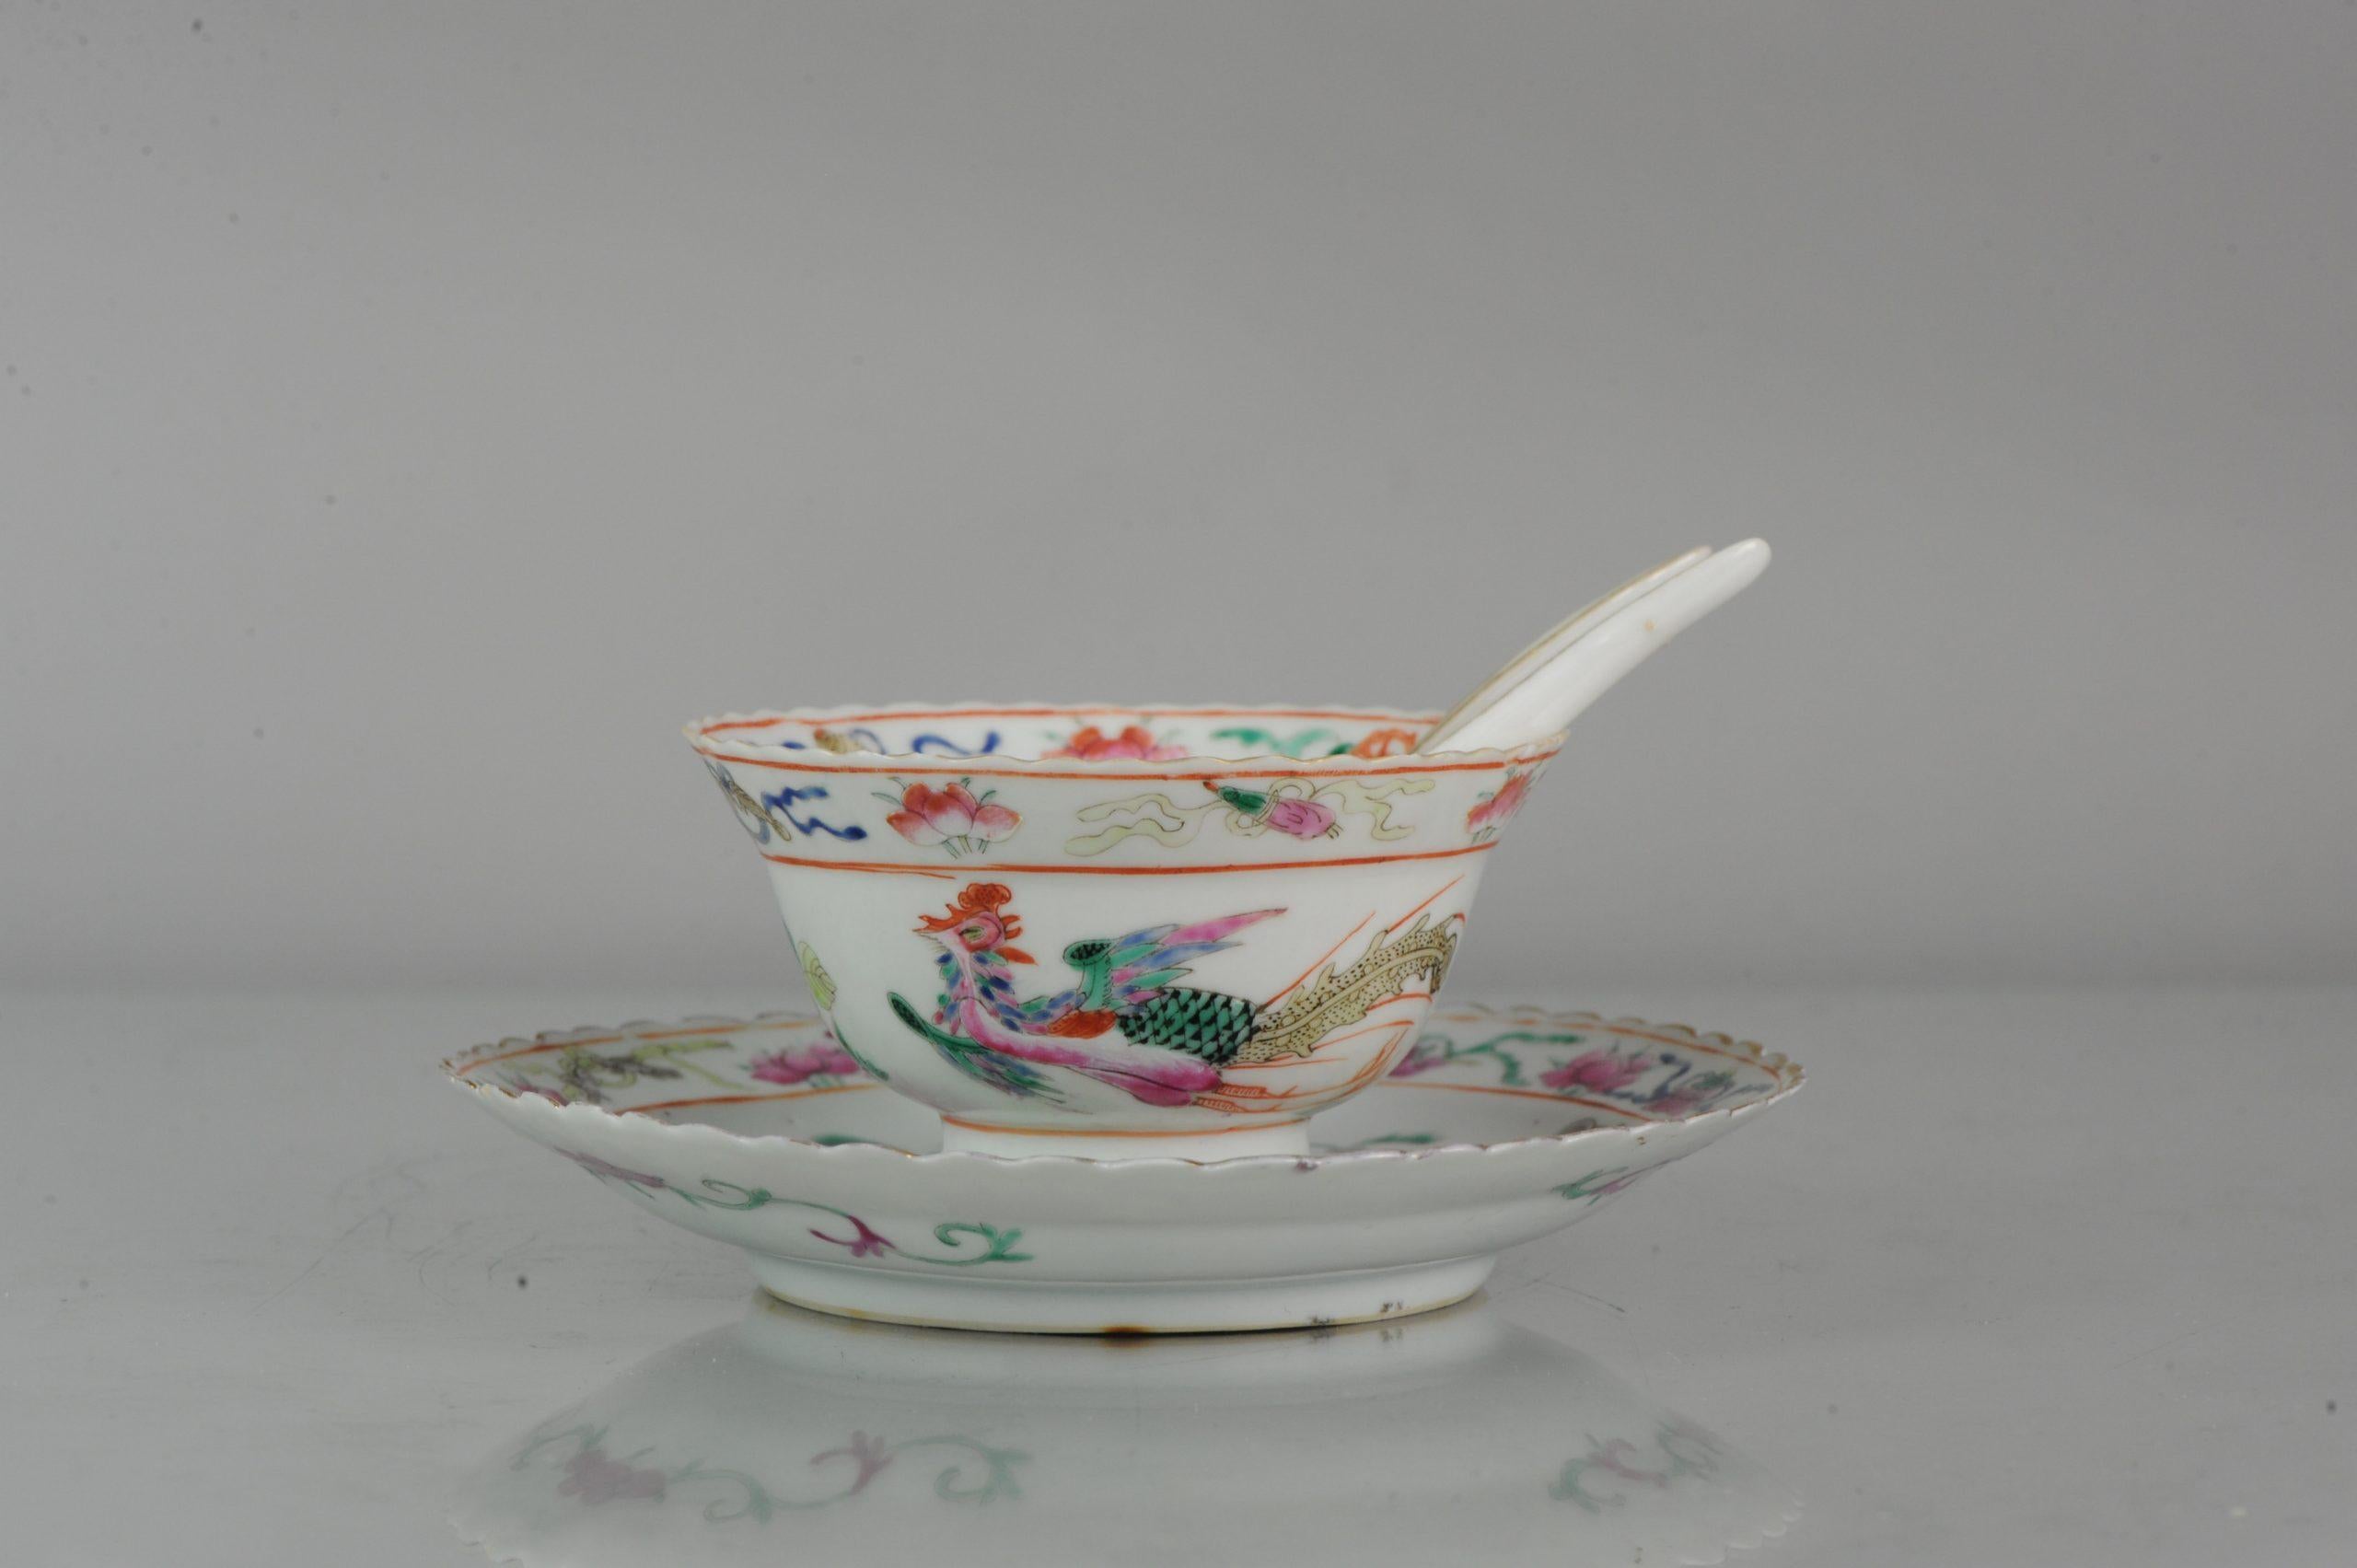 Ming Straits Porcelain Chinese Bowl China SE Asian Market Peranakan Marked